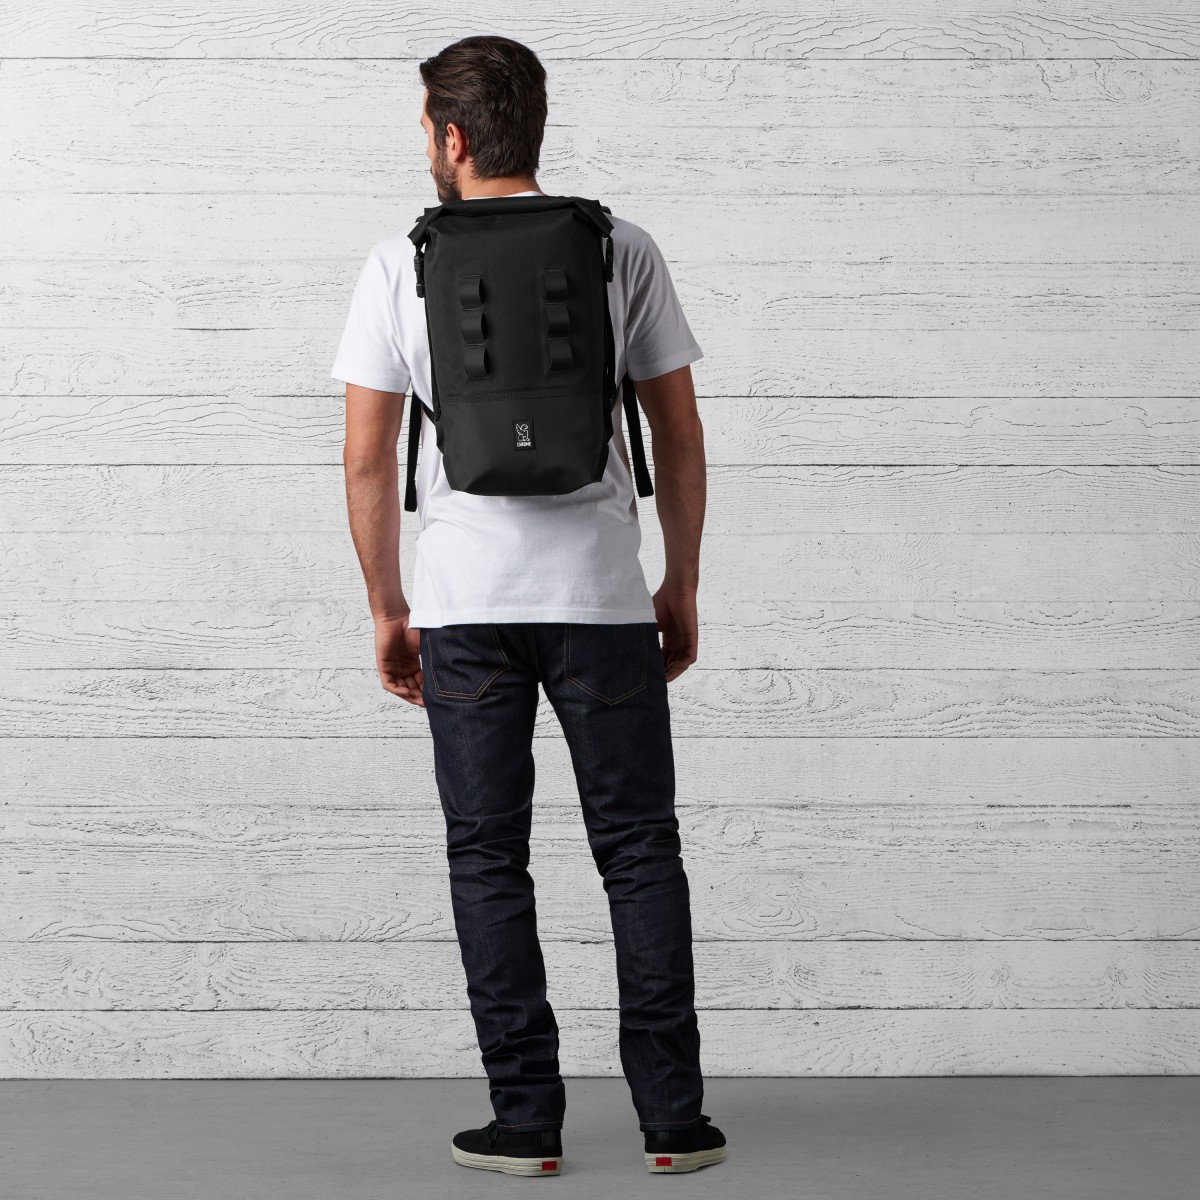 chrome urban backpack